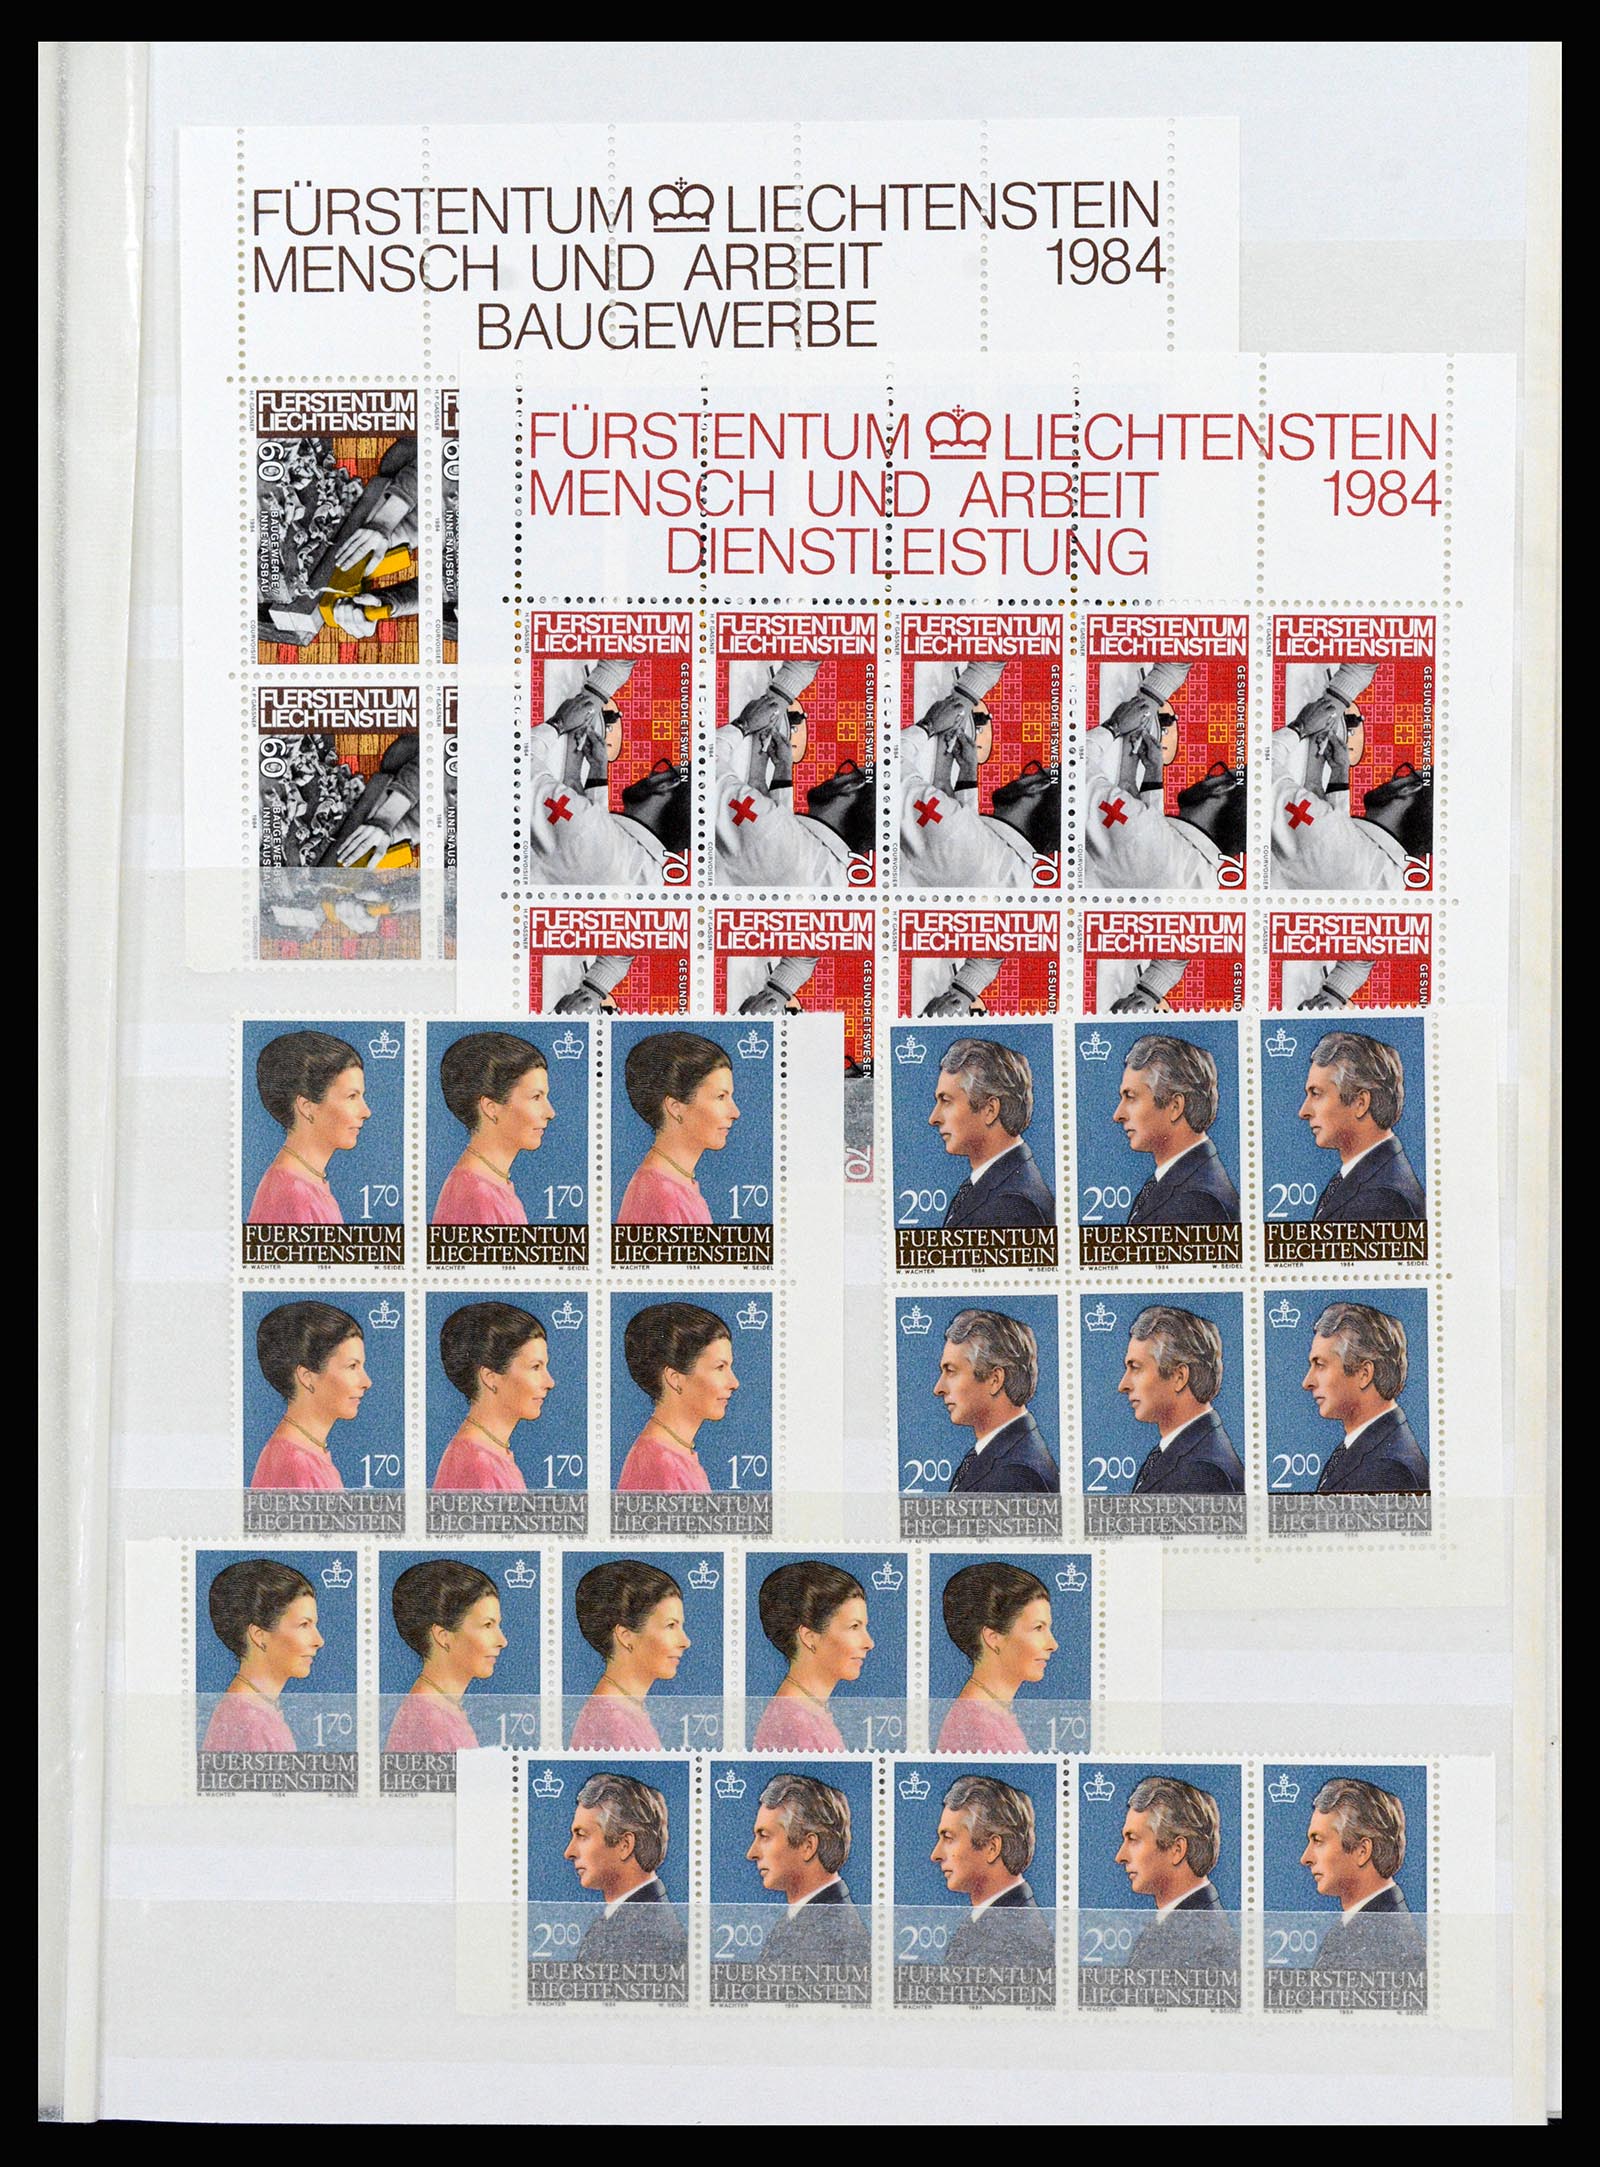 37261 079 - Stamp collection 37261 Liechtenstein 1961-1995.